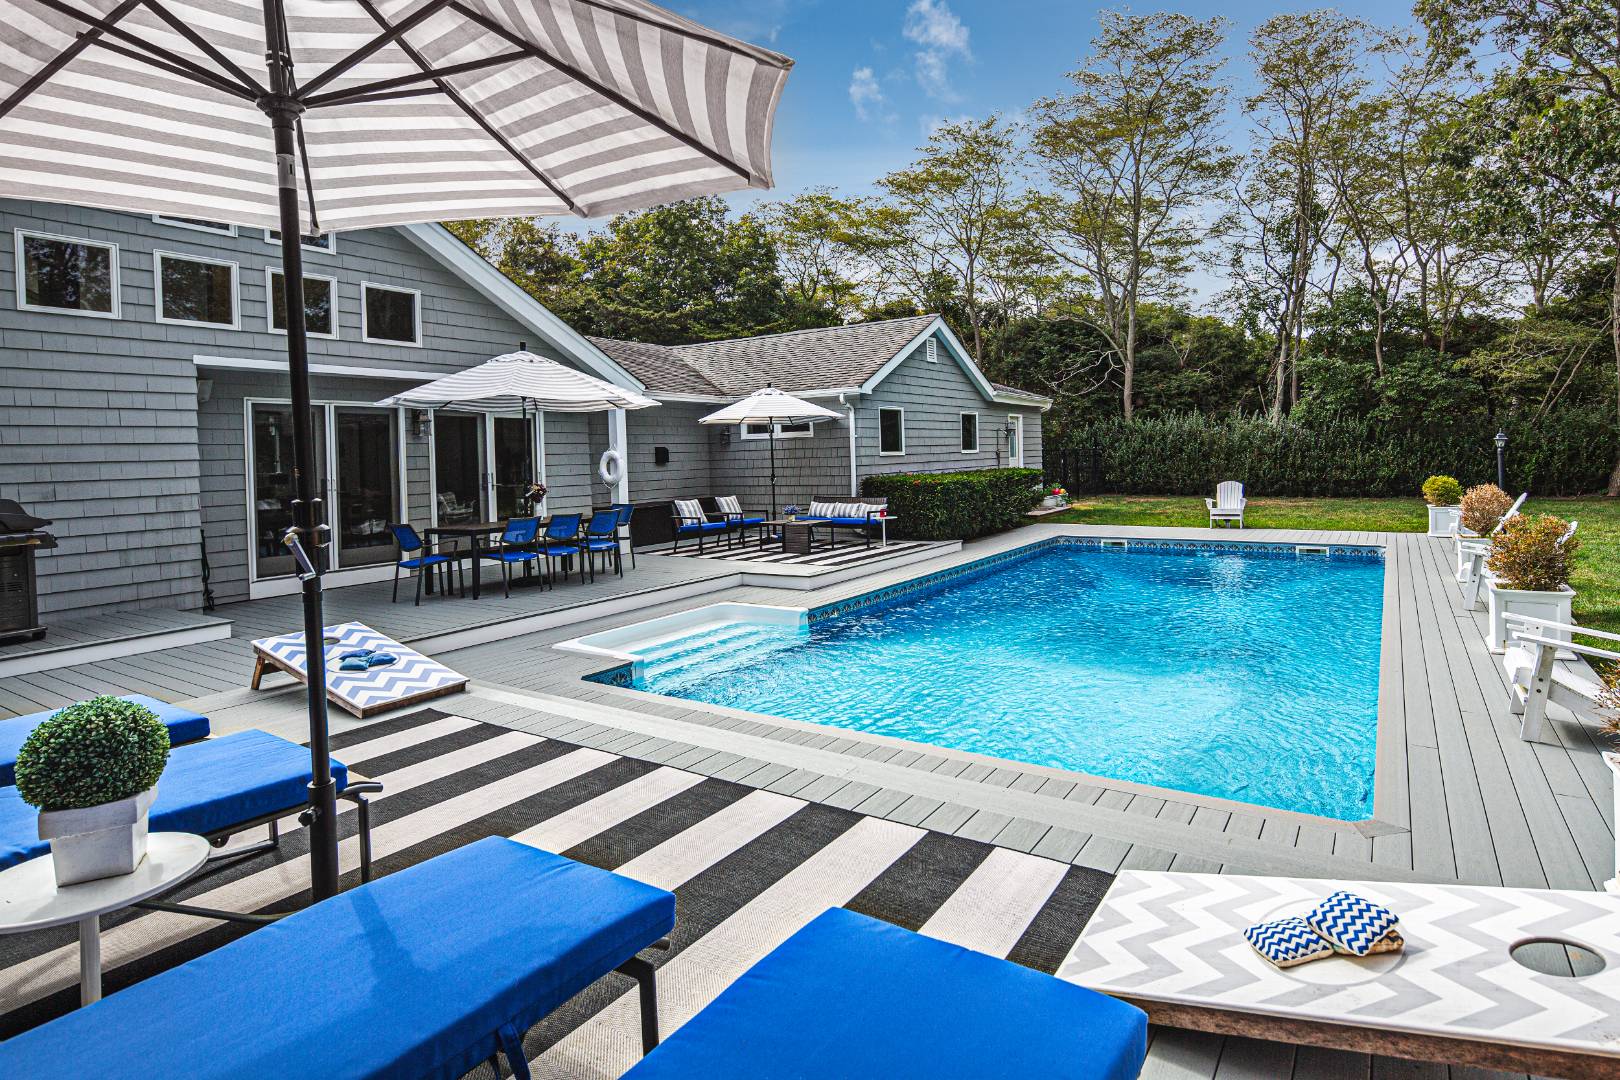 Rental Property at Westhampton, Westhampton, Hamptons, NY - Bedrooms: 4 
Bathrooms: 3.5  - $35,000 MO.